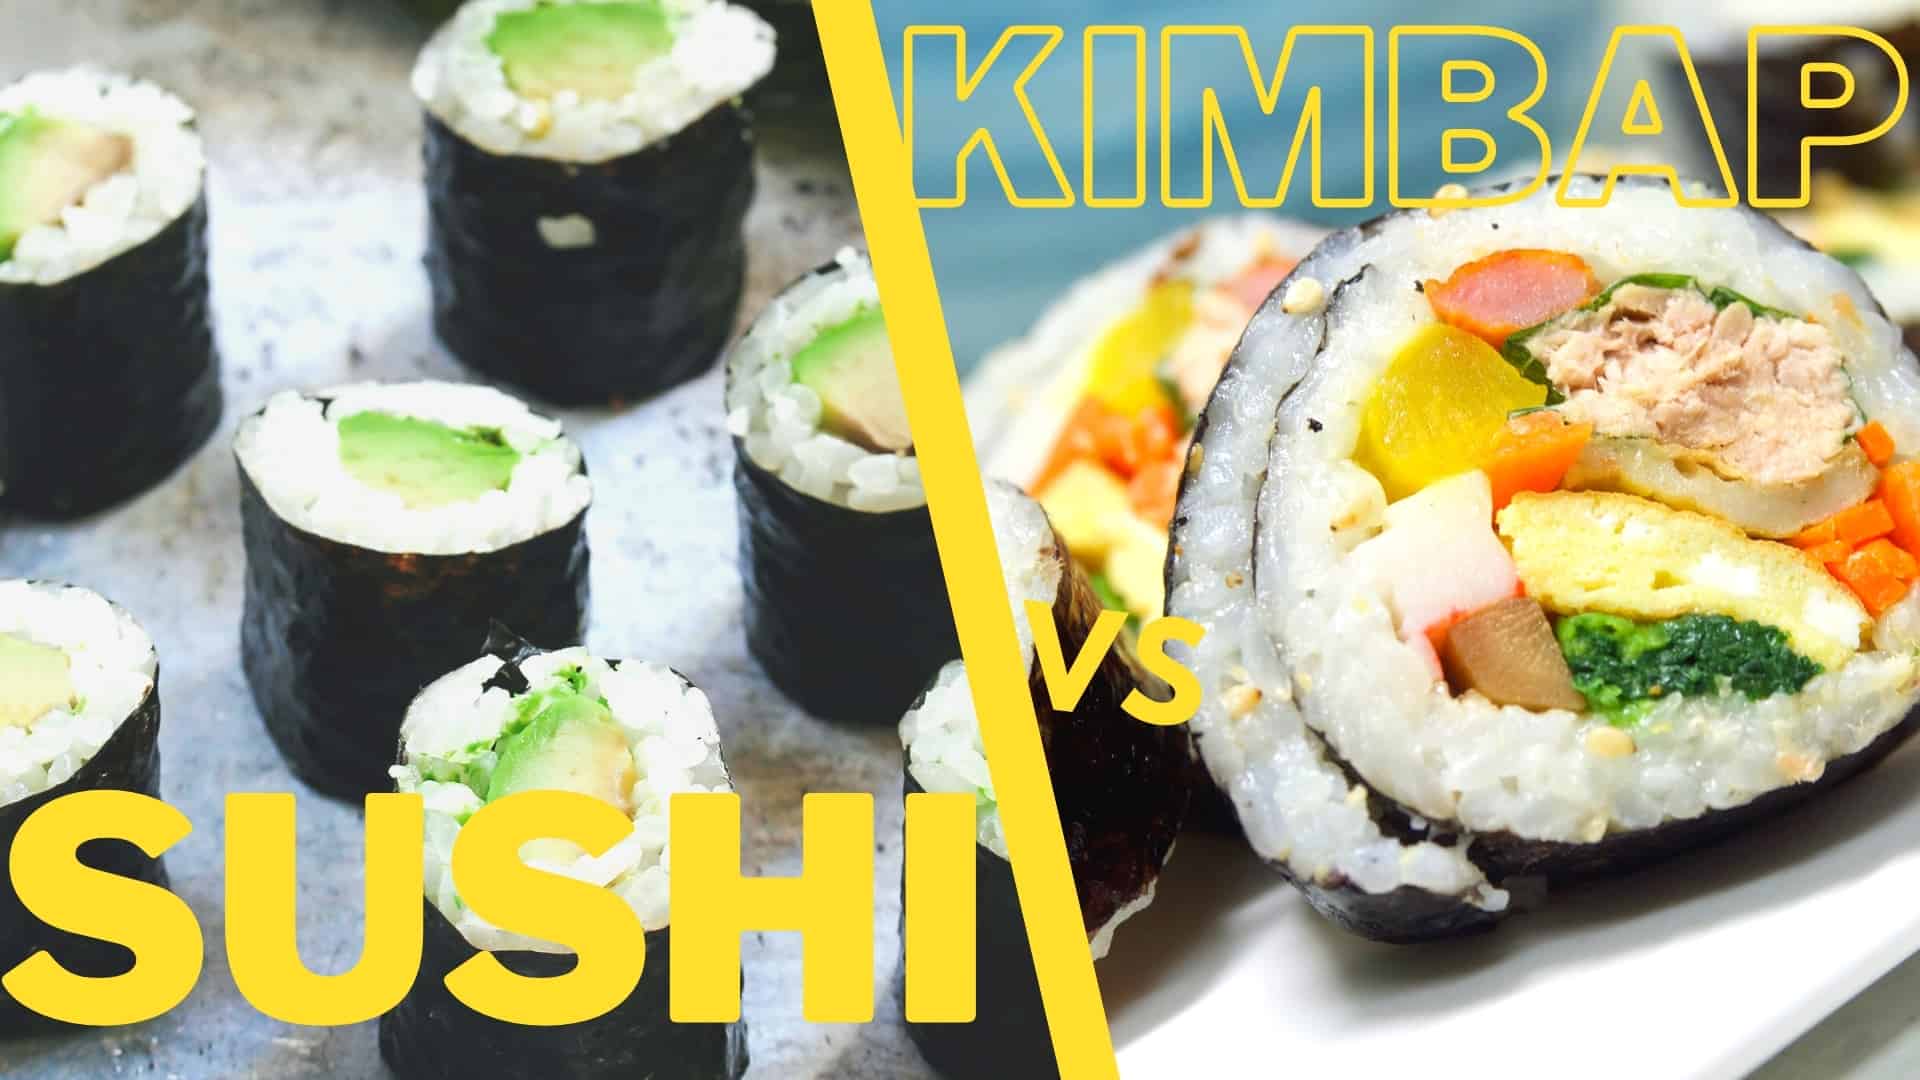 суши срещу кимбап